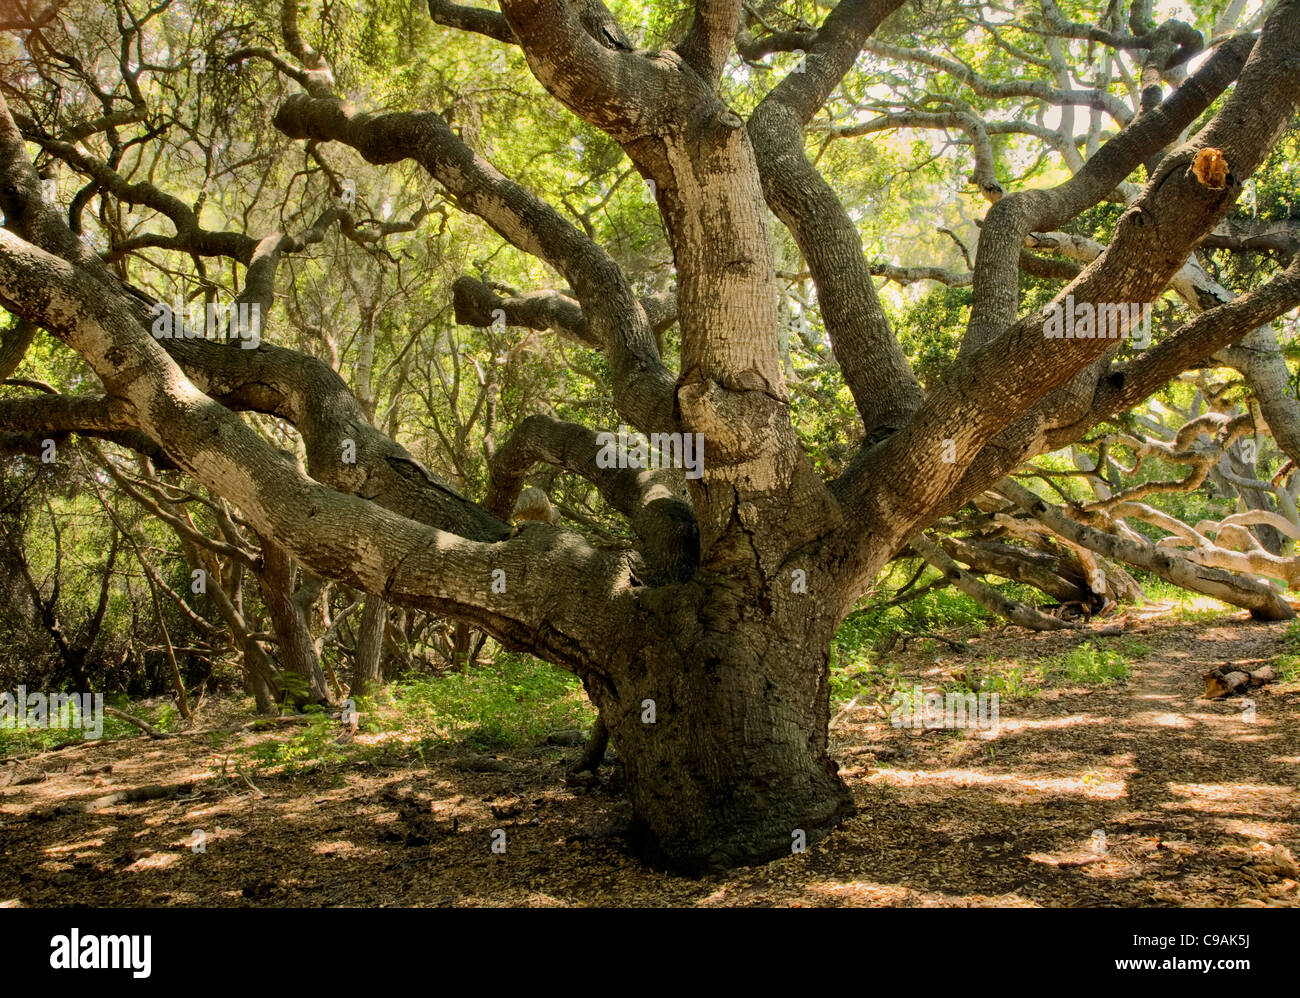 CALIFORNIA - árbol de roble a lo largo del sendero a través de la Reserva Estatal de Los Osos Oaks. Foto de stock